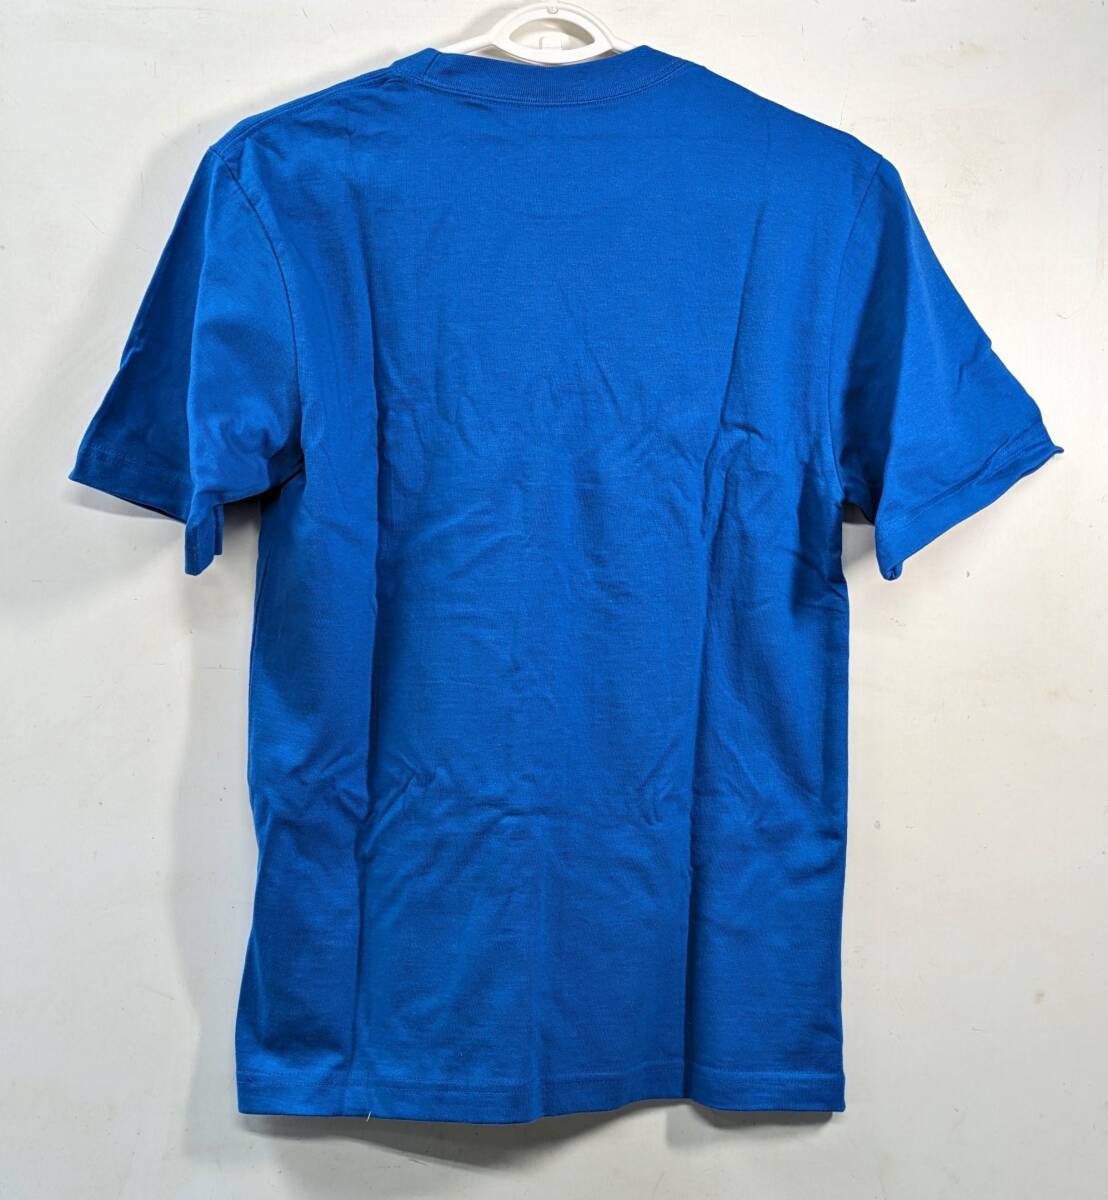 * snow seal meg milk /MEGMILK T-shirt S size cotton 100% not for sale Novelty * unused *